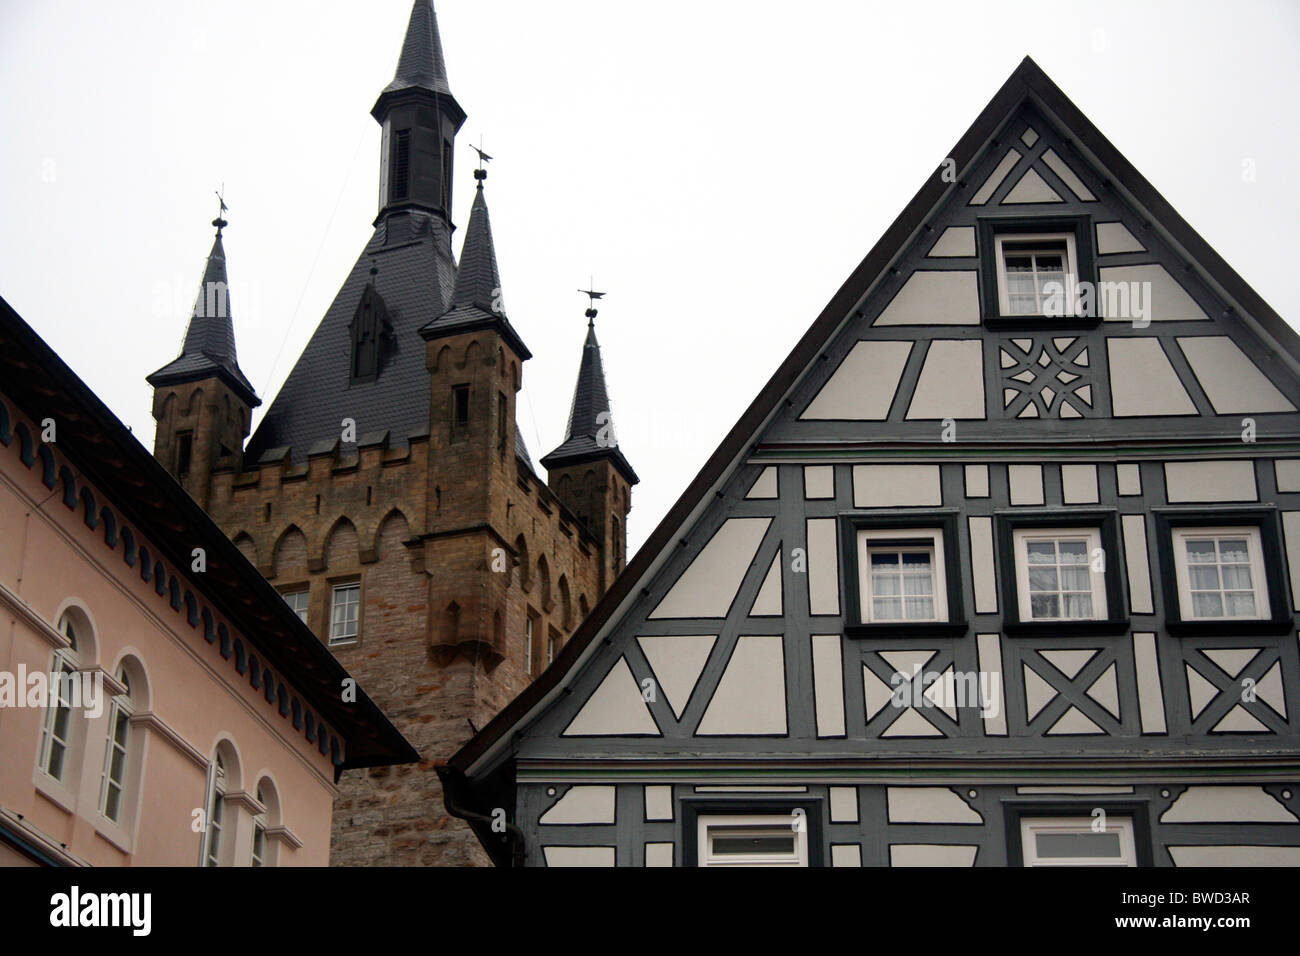 Blauer Turm, blaue Turm, halb Fachwerkhaus, mittelalterliche Stadt Bad Wimpfen, Deutschland Stockfoto